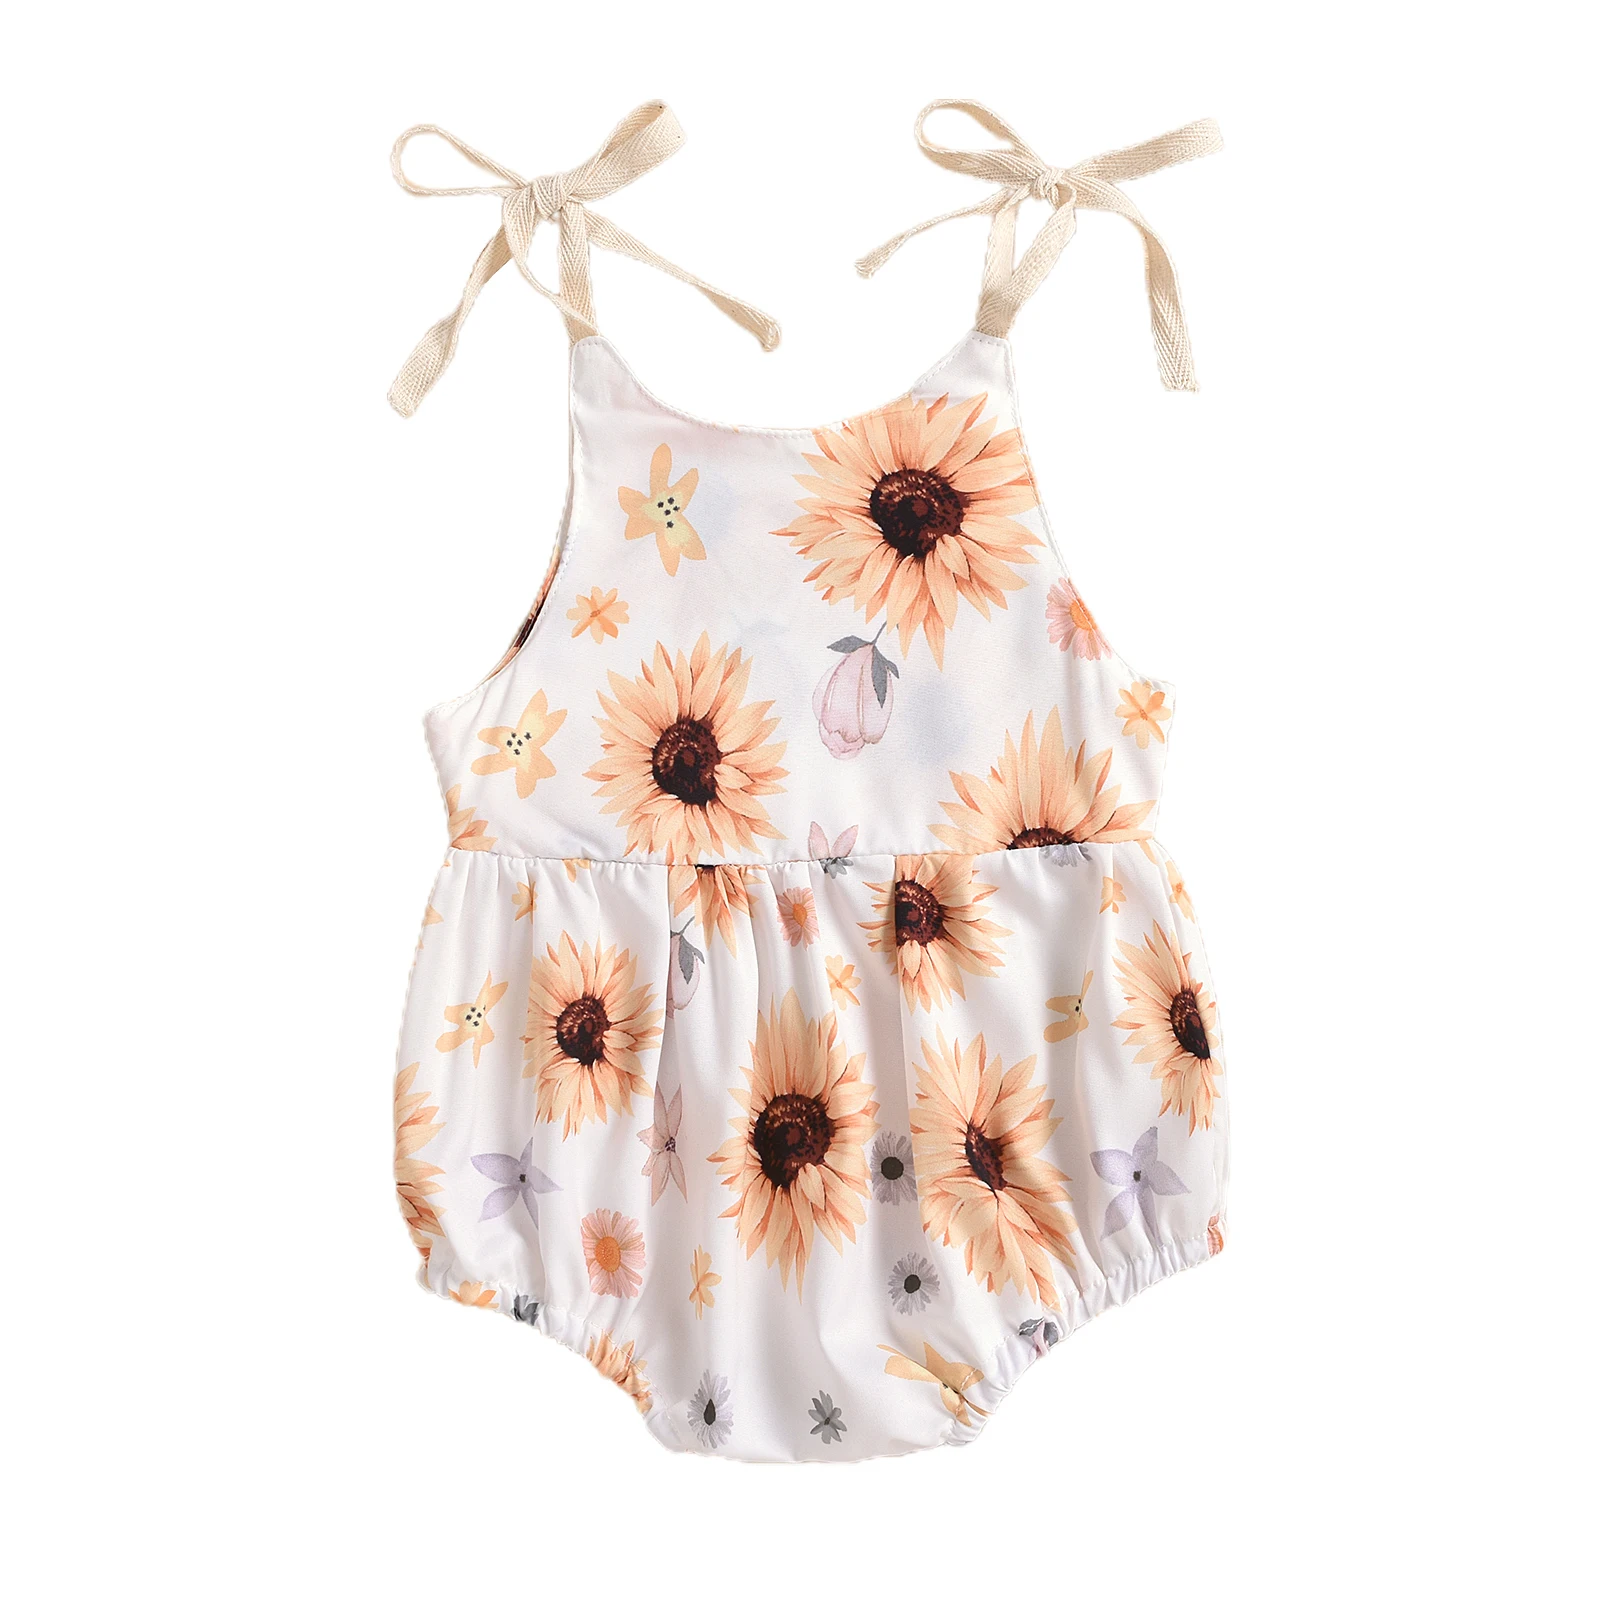 0-24M Newborn Infant Baby Girl Sun Sunflowe Print Sleeveless Romper Jumpsuit Summer Toddler Clothing Baby Bodysuits for girl 